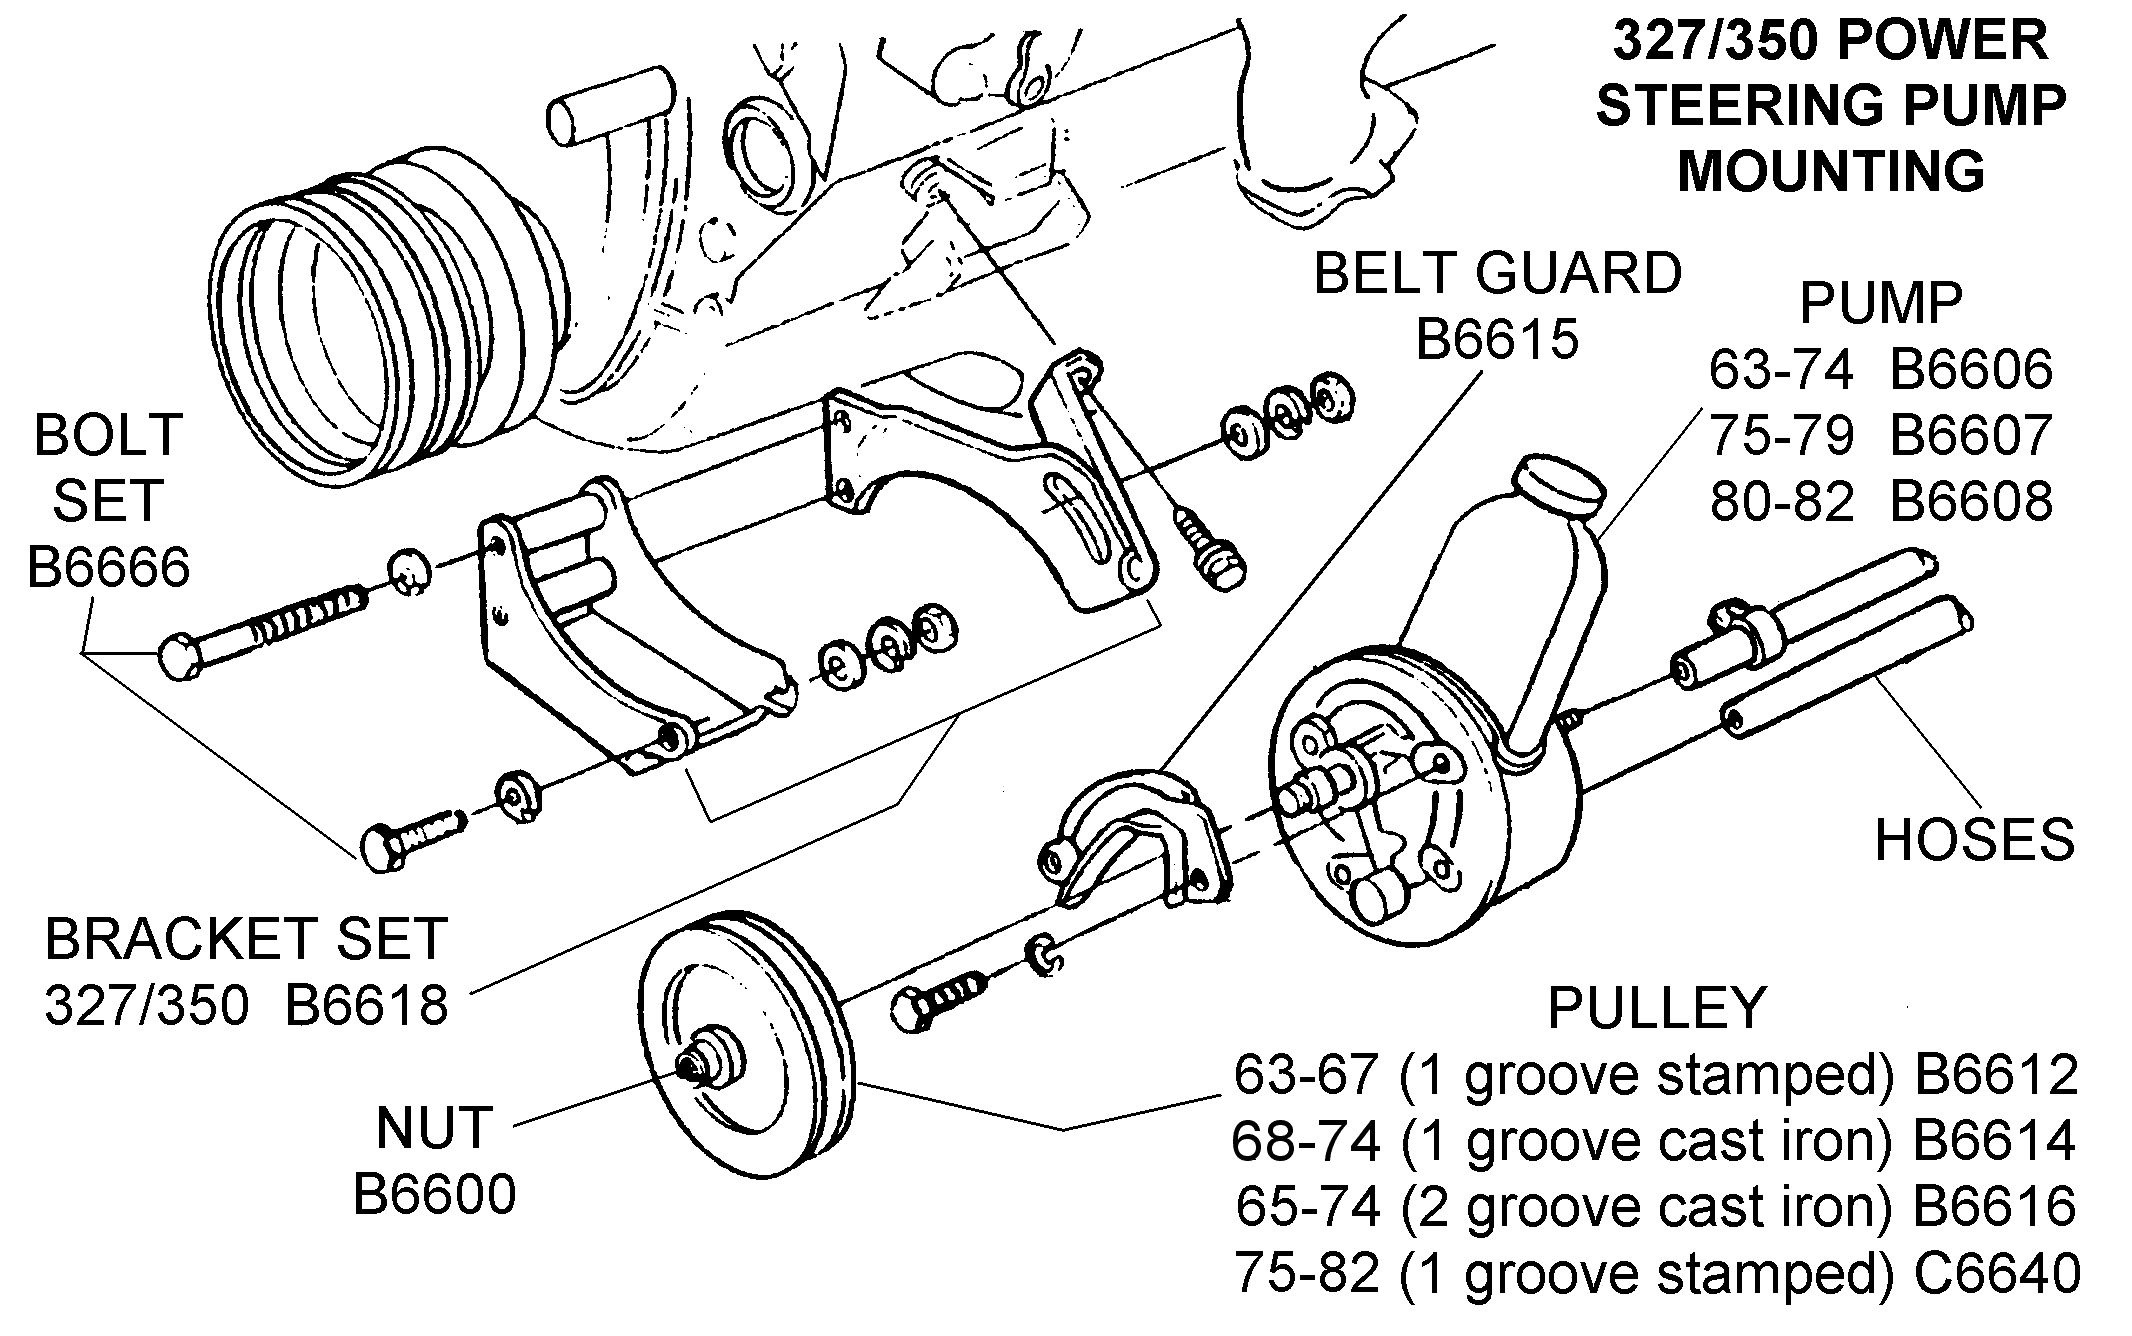 Power Steering Motor Diagram | Online Wiring Diagram